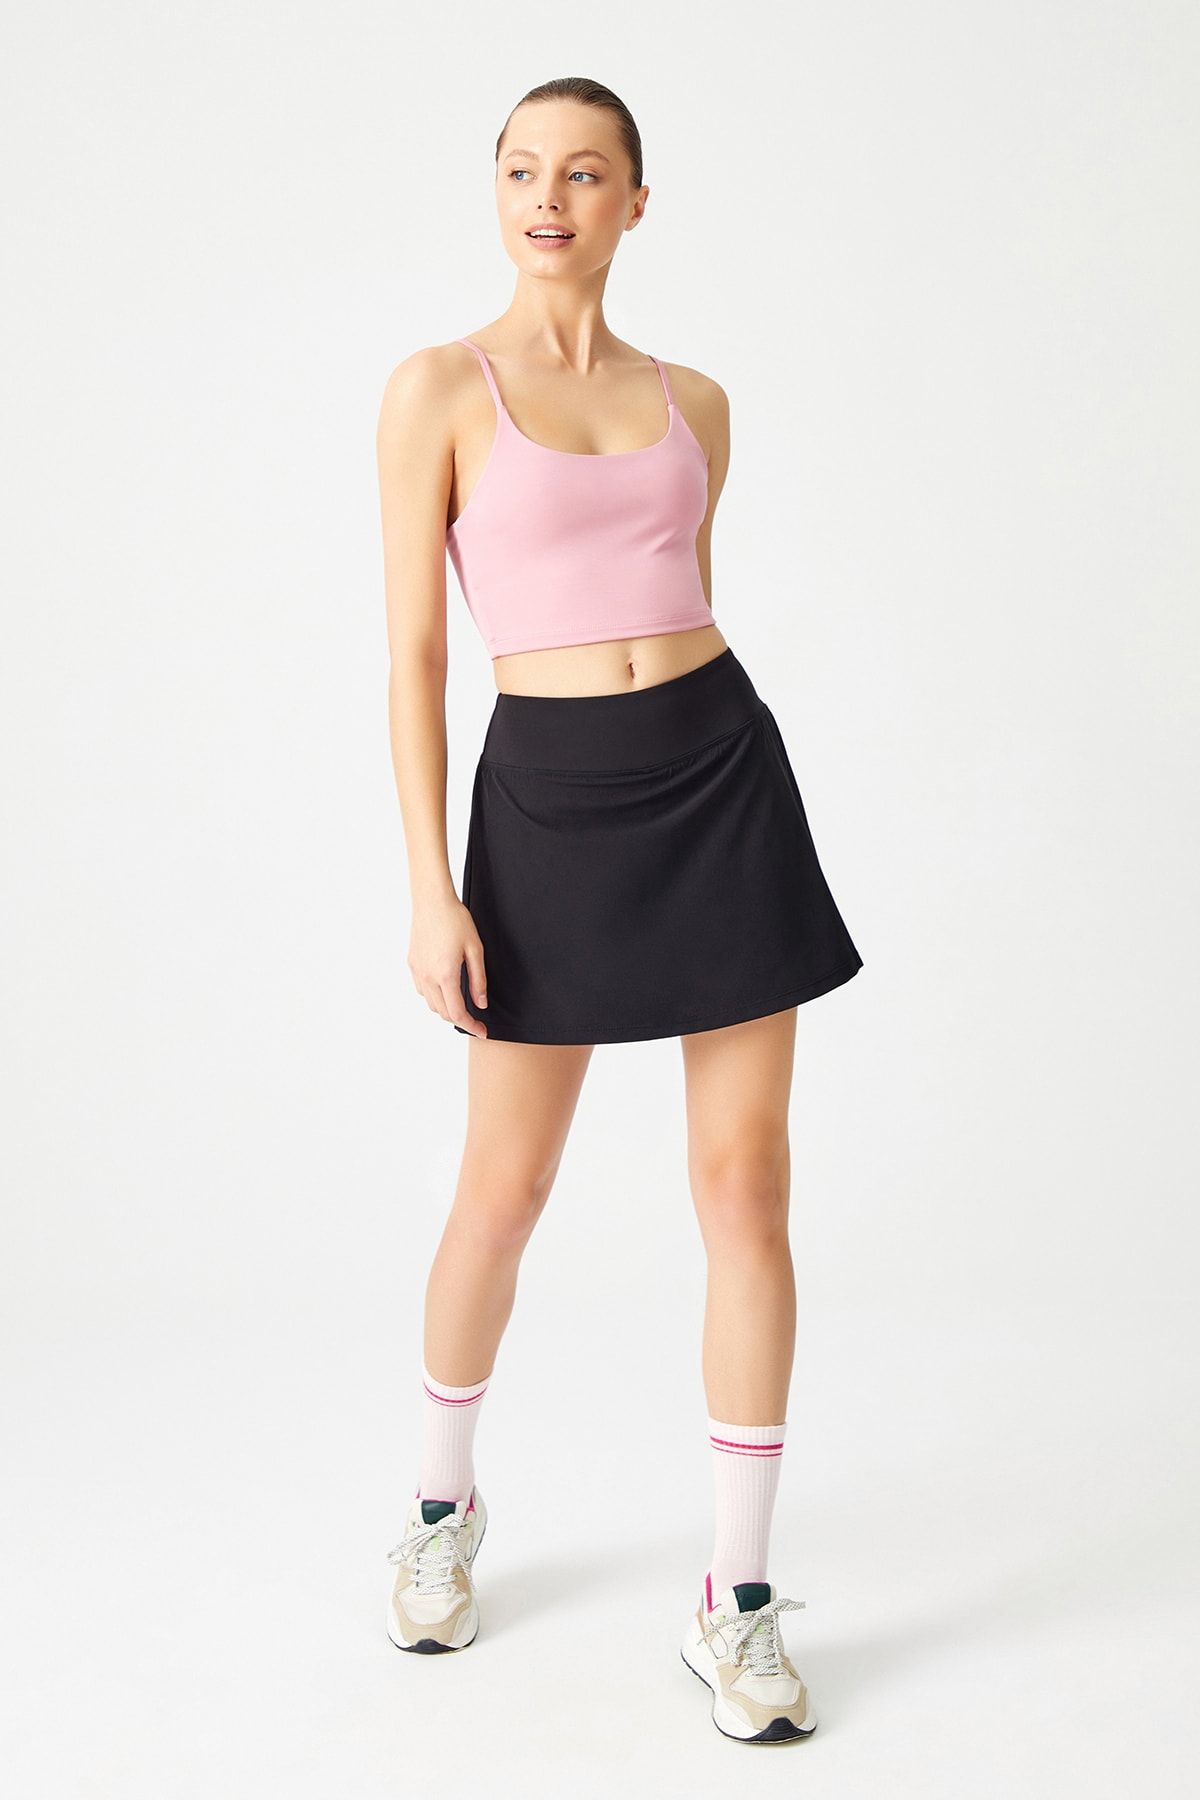 LOS OJOS Siyah 2 Katmanlı Tenis Eteği - Şort Etek - Spor Etek Tennis Skirt